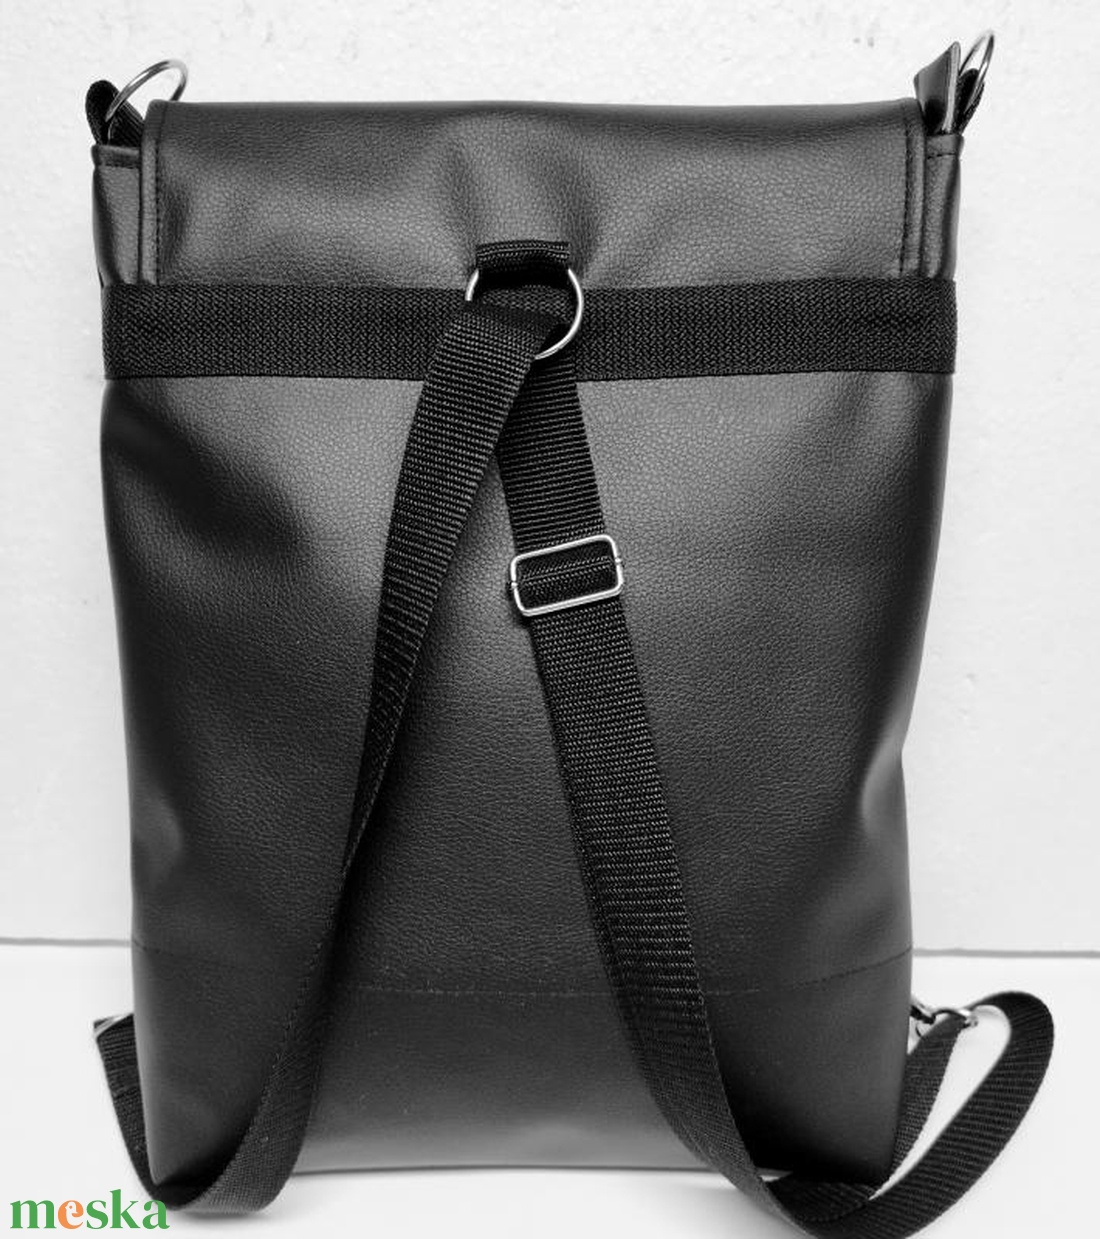 Fedélrészes 3in1 hátizsák univerzális táska lila-rózsaszín mandalás cordurával - táska & tok - variálható táska - Meska.hu